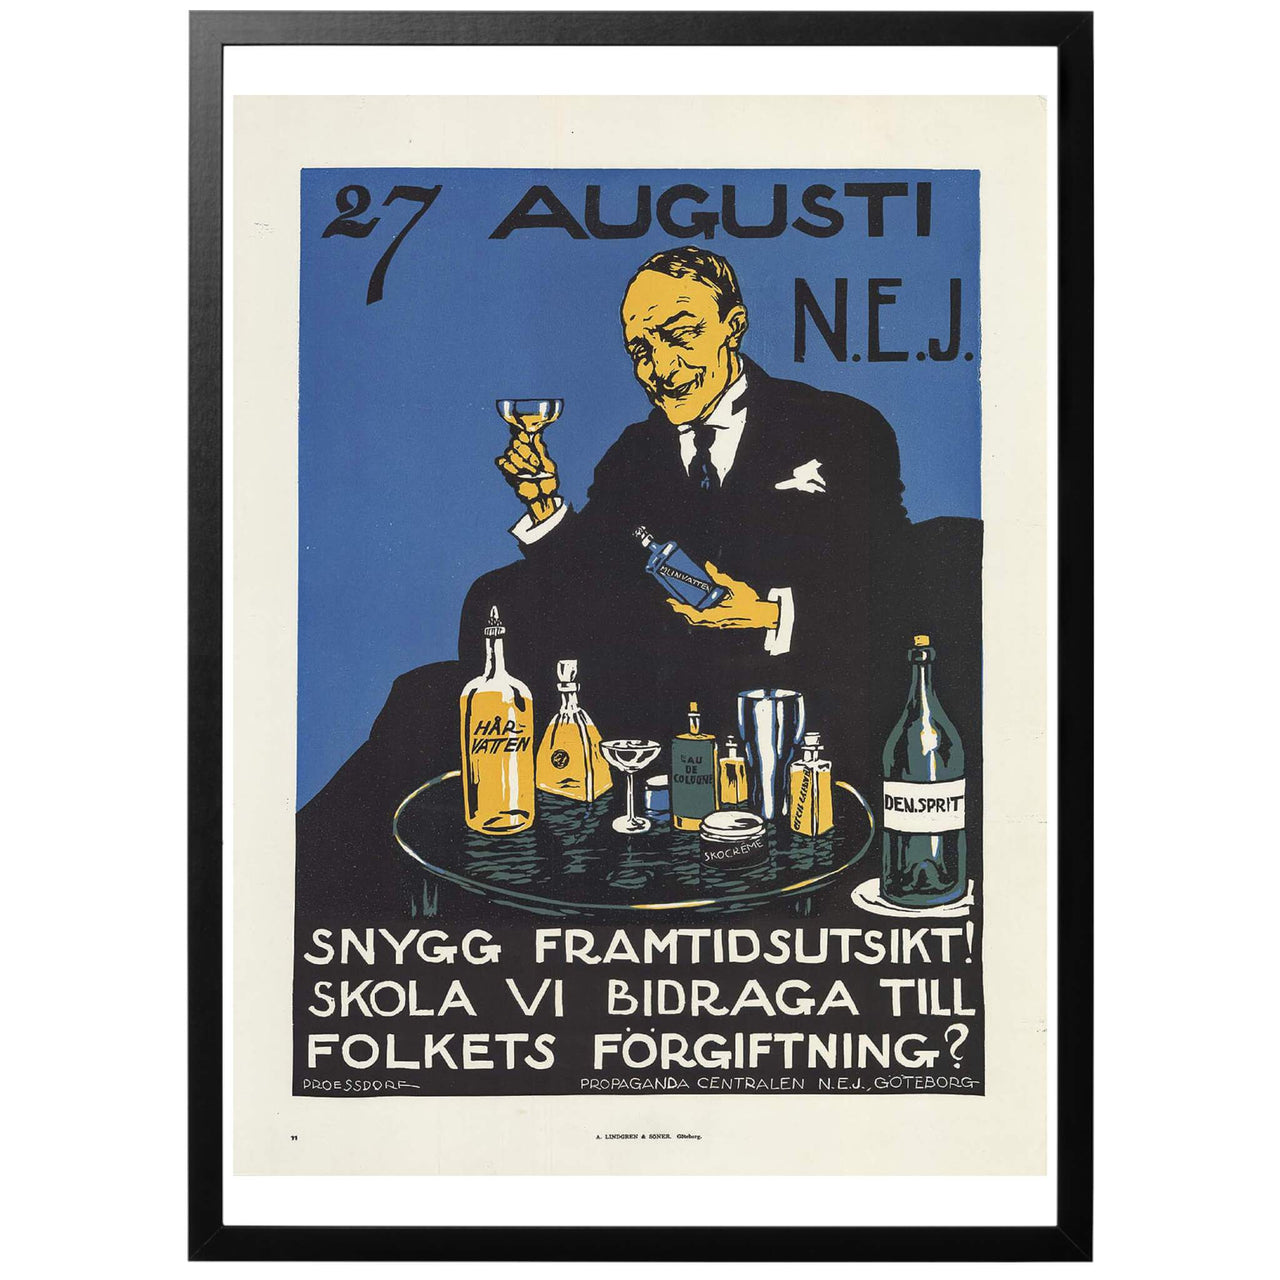 27 augusti - NEJ. Svensk affisch från 1922 och folkomröstningen om rusdrycksförbud föreställande en äldre herre som skålar med hårvatten.